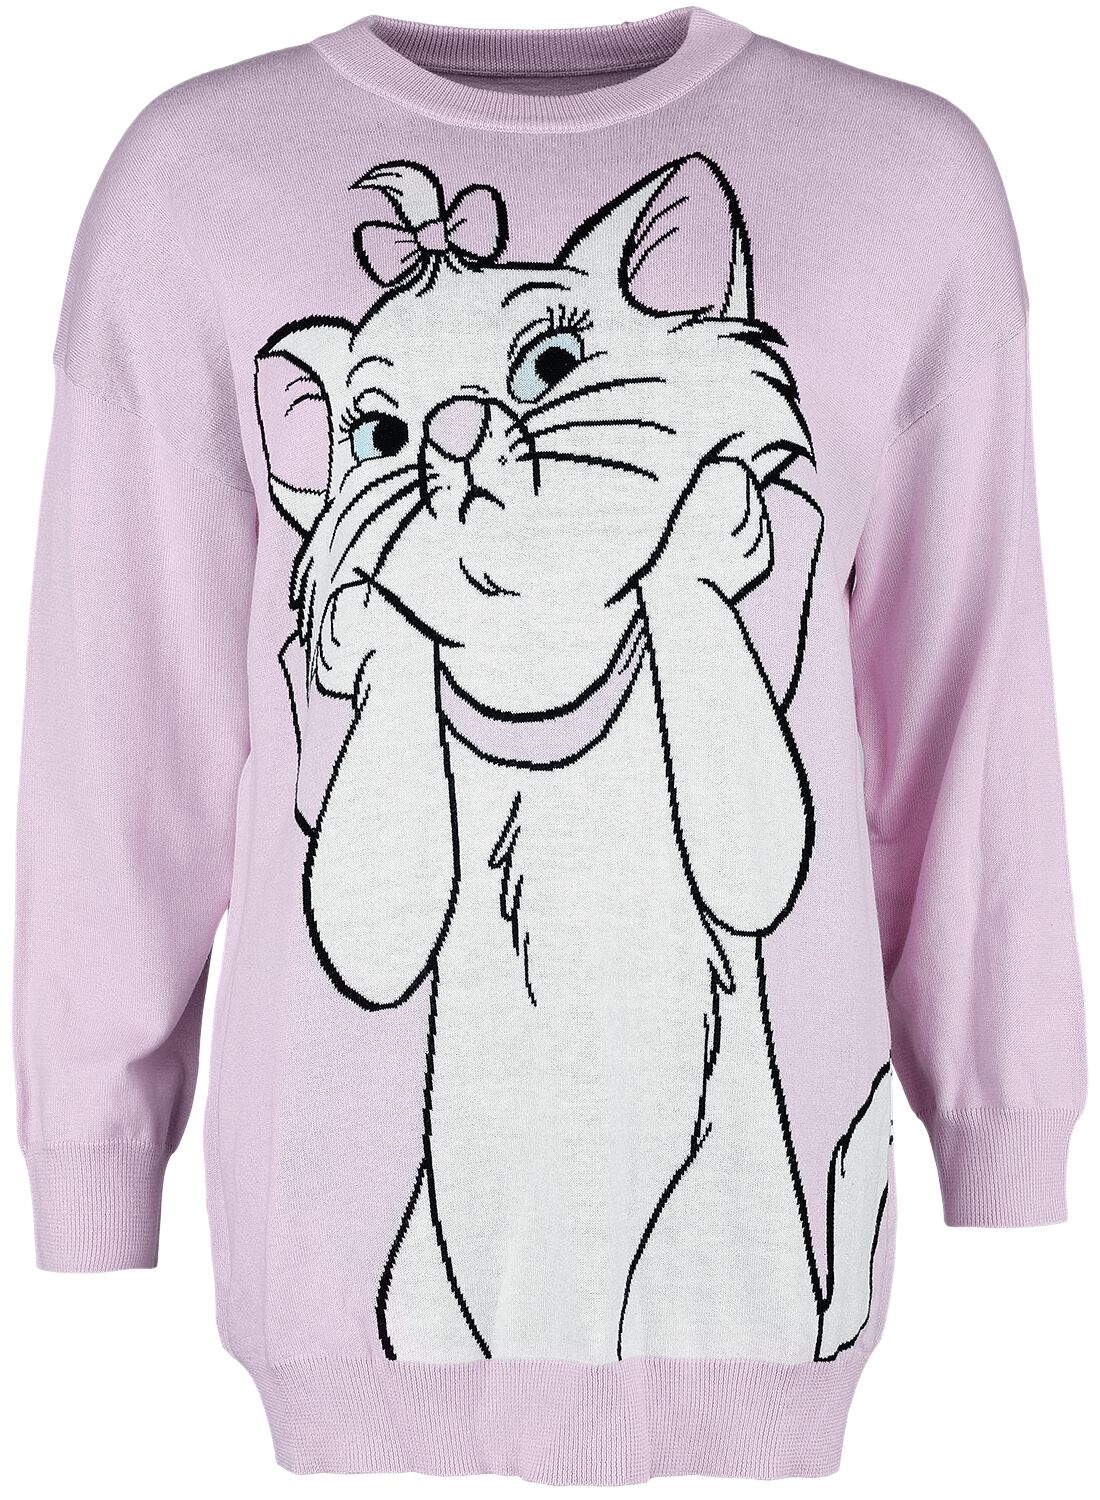 Pull tricoté Disney de Les Aristochats - Marie - S à L - pour Femme - rose clair